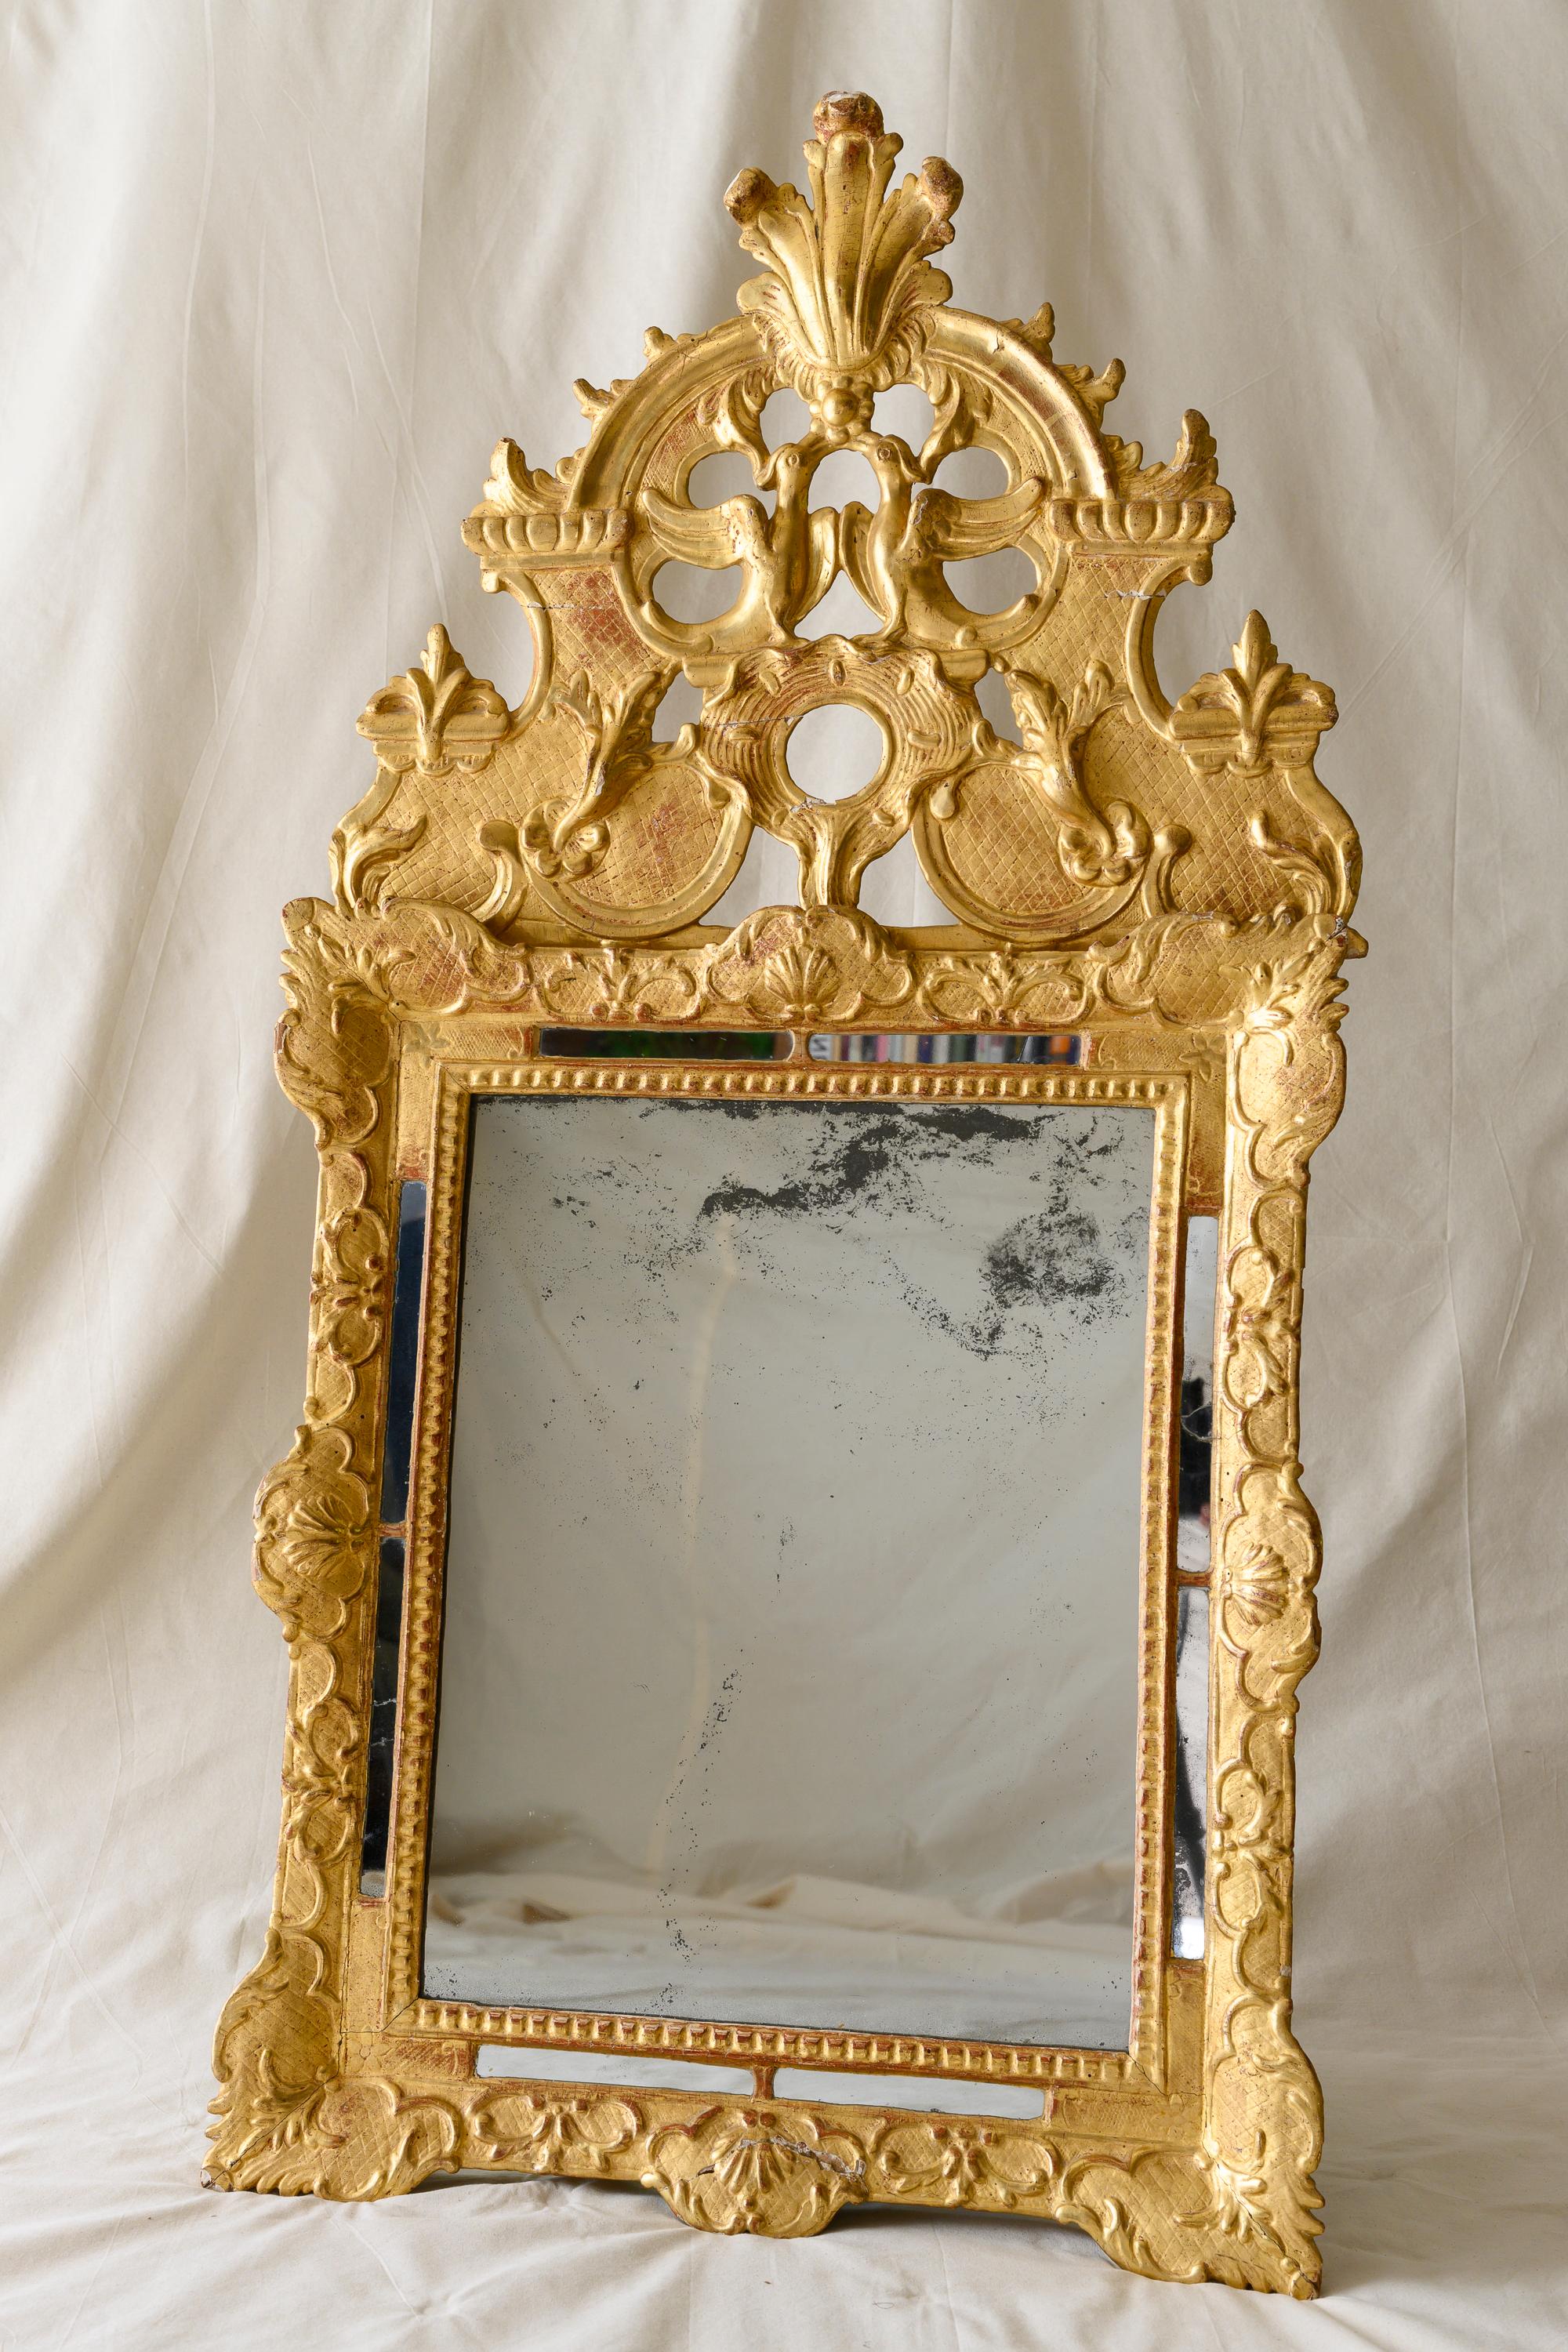 Miroir de mariage en bois doré de la période Régence, présentant une plaque rectangulaire en verre au mercure avec une bordure de perles et de miroirs, un cadre sculpté de feuillage et de festons surmonté d'une crête sculpturale centrée de deux